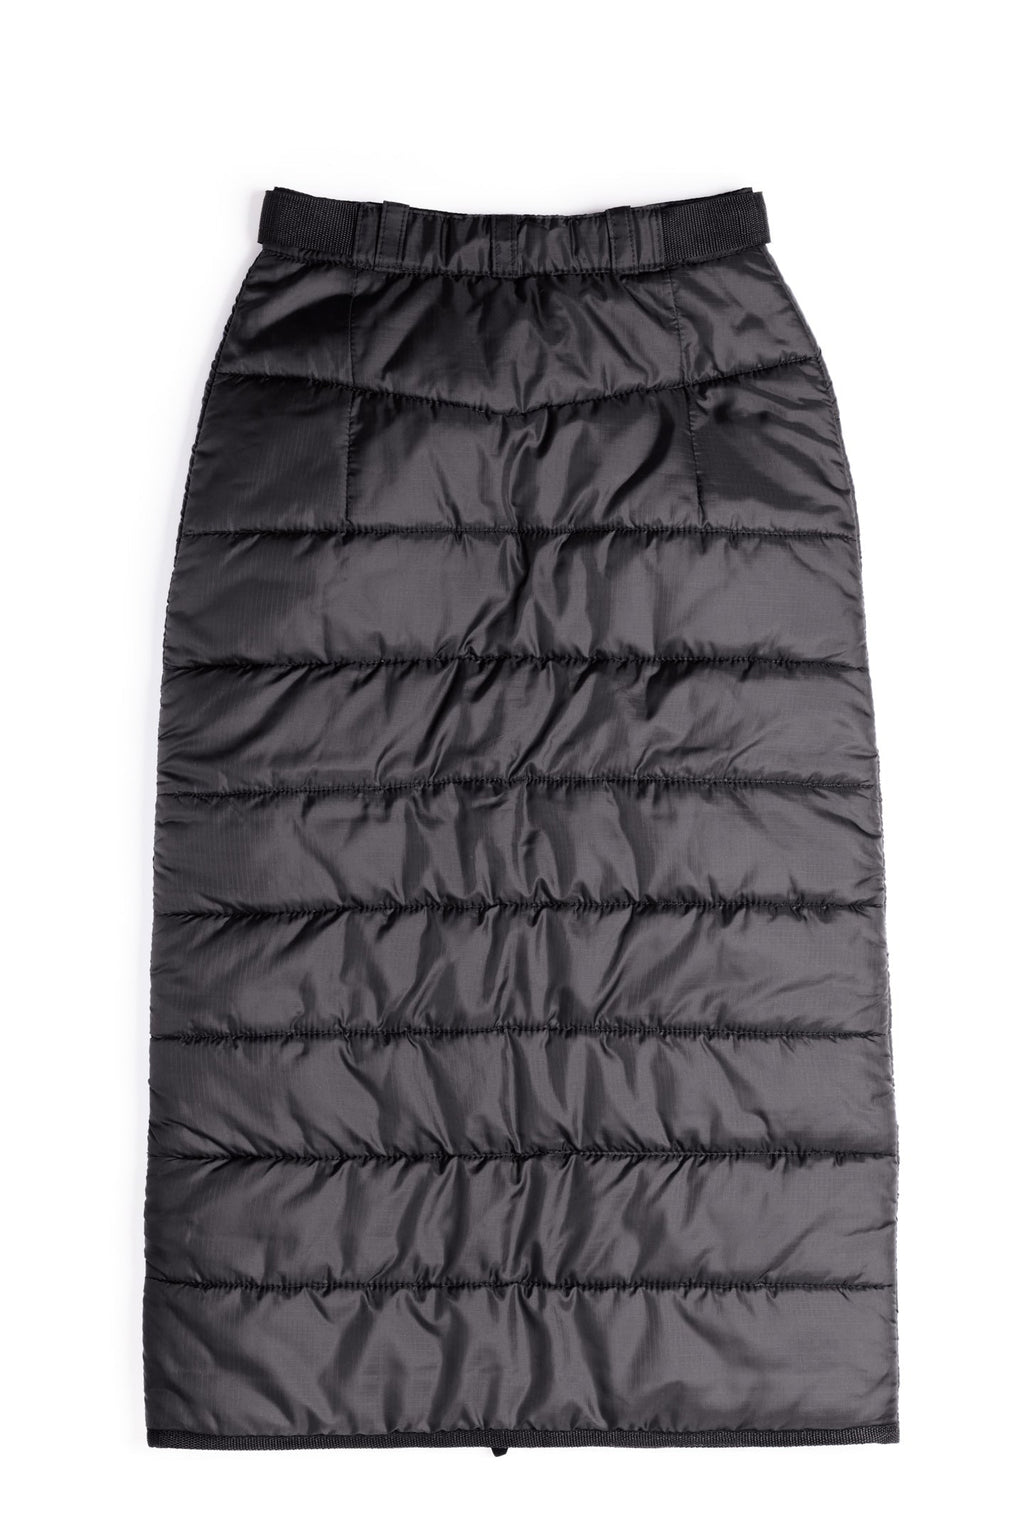 jupe d'hiver extérieur asclepiade kim fletcher longue jupe noir matelassé